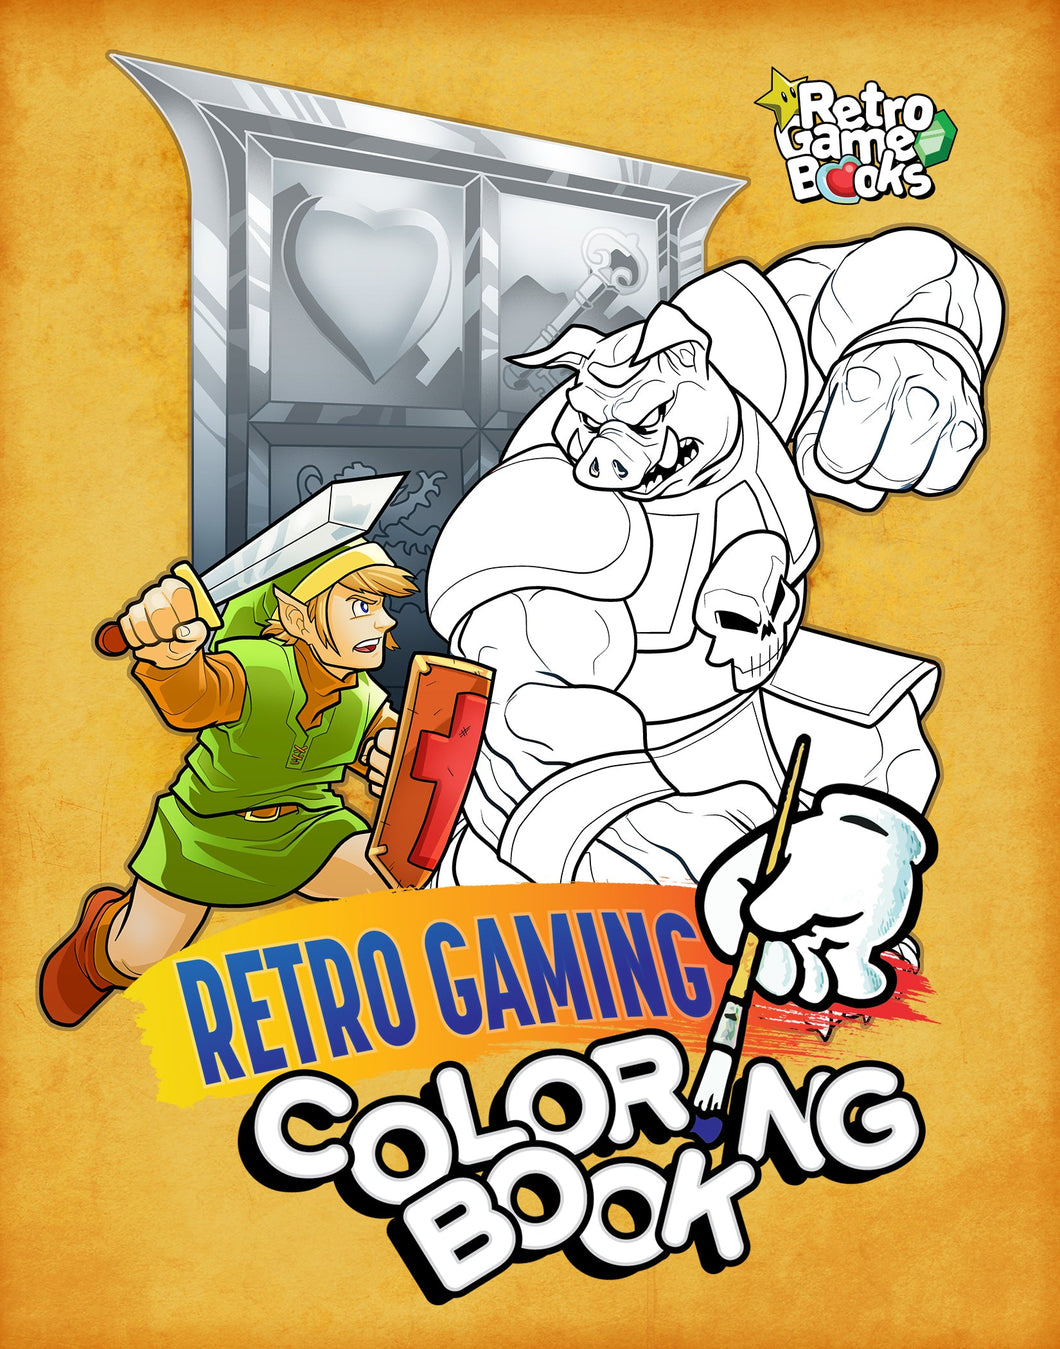 Retro Gaming Coloring Book [ebook]